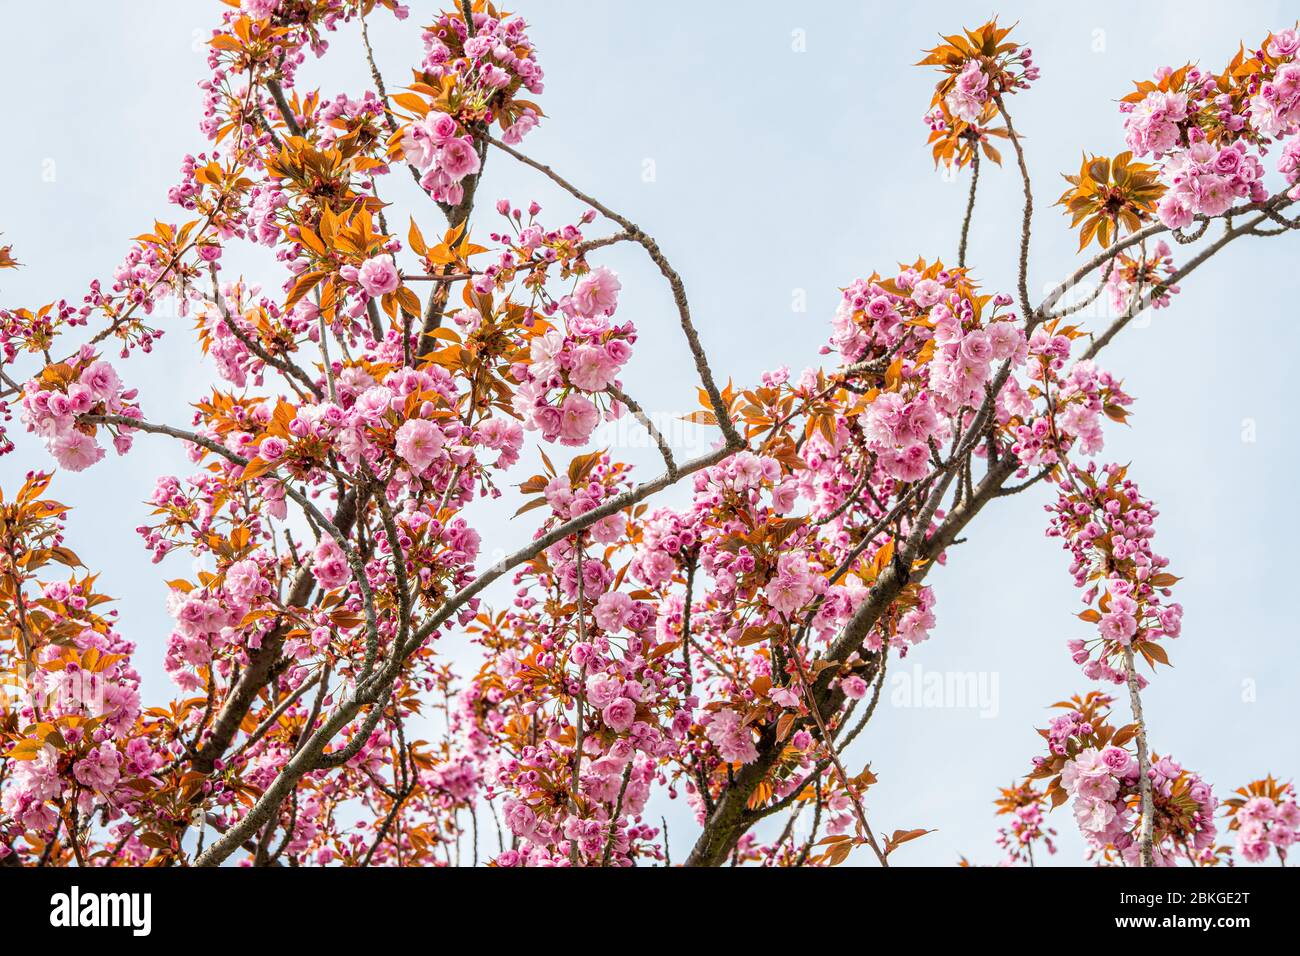 16 aprile 2020, Sassonia, Lipsia: Nella cultura giapponese, la fioritura dei ciliegi giapponesi è un momento culminante del calendario. Segna l'inizio della primavera. La fioritura è sinonimo di bellezza, di transitorietà e di nuovi inizi. Nel frattempo, alcuni alberi sono stati piantati anche nelle città tedesche. Foto: Nico Schimmelpfennig/dpa-Zentralbild/ZB Foto Stock